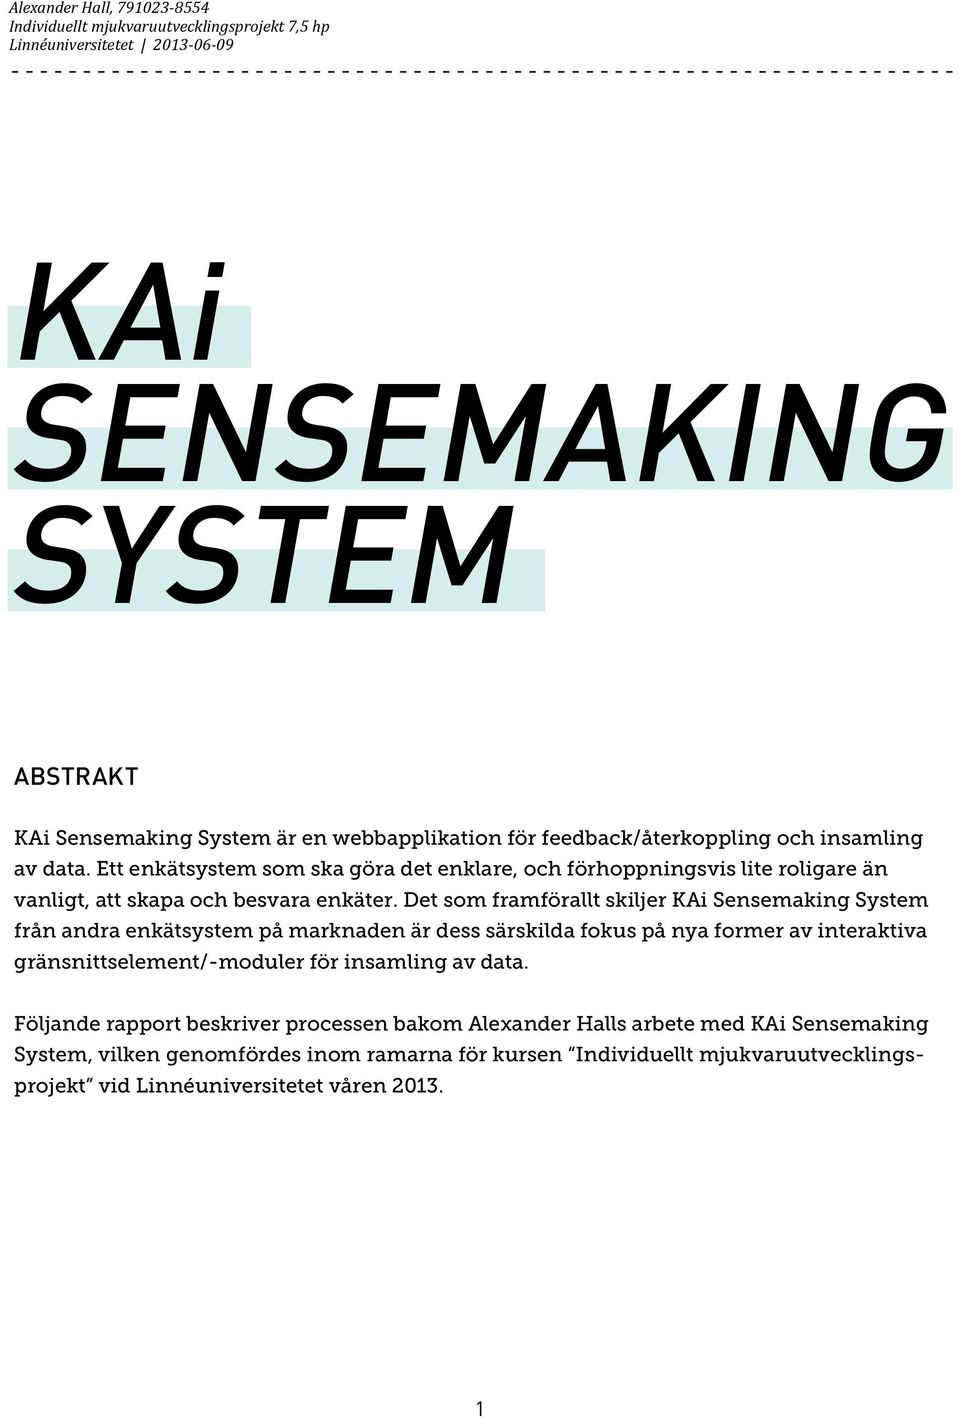 Det som framförallt skiljer KAi Sensemaking System från andra enkätsystem på marknaden är dess särskilda fokus på nya former av interaktiva gränsnittselement/-moduler för insamling av data.